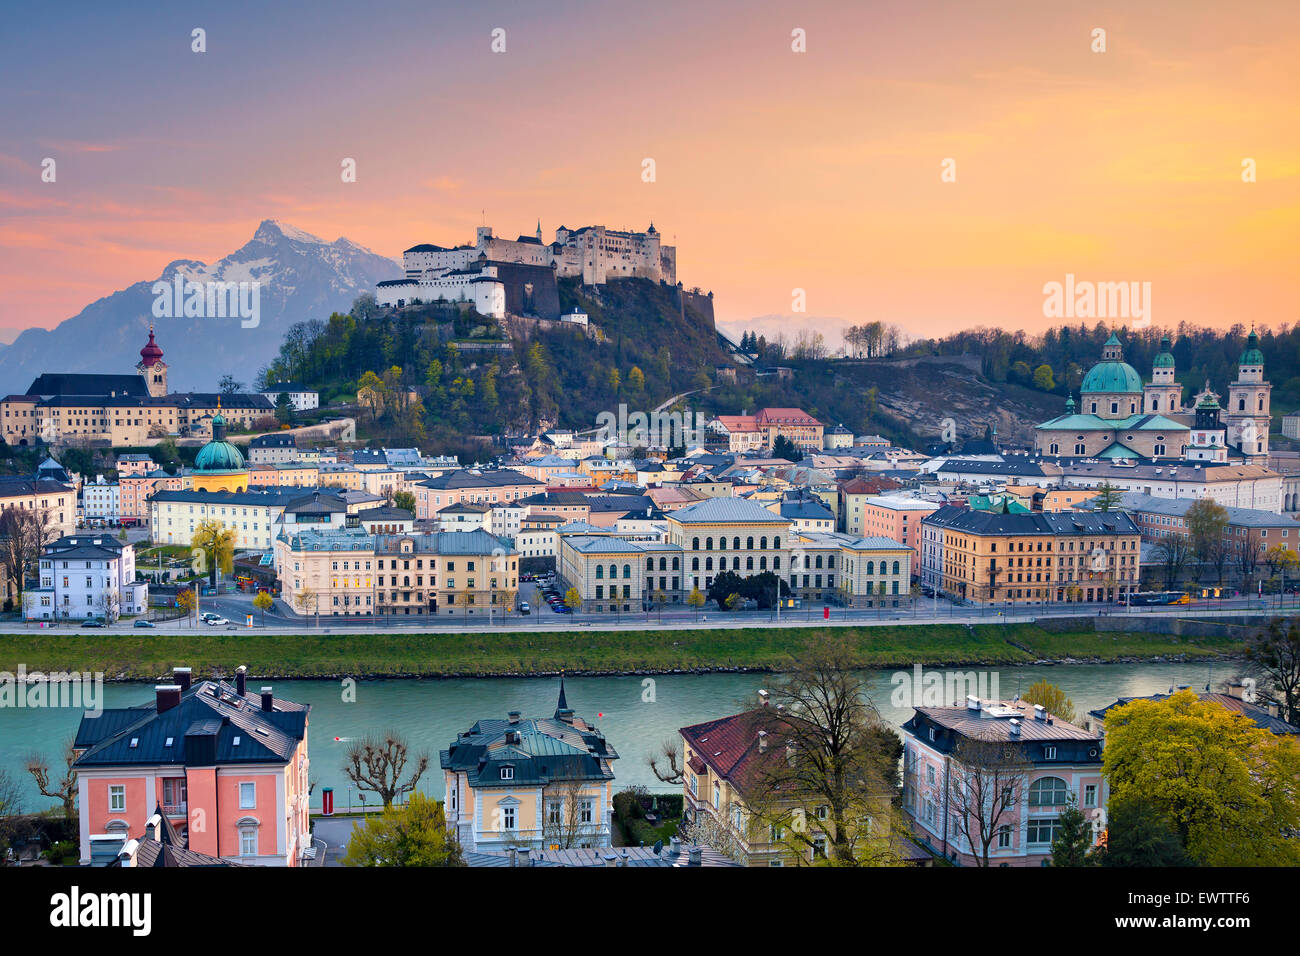 Salzburg, Austria. Image of Salzburg during twilight dramatic sunset. Stock Photo